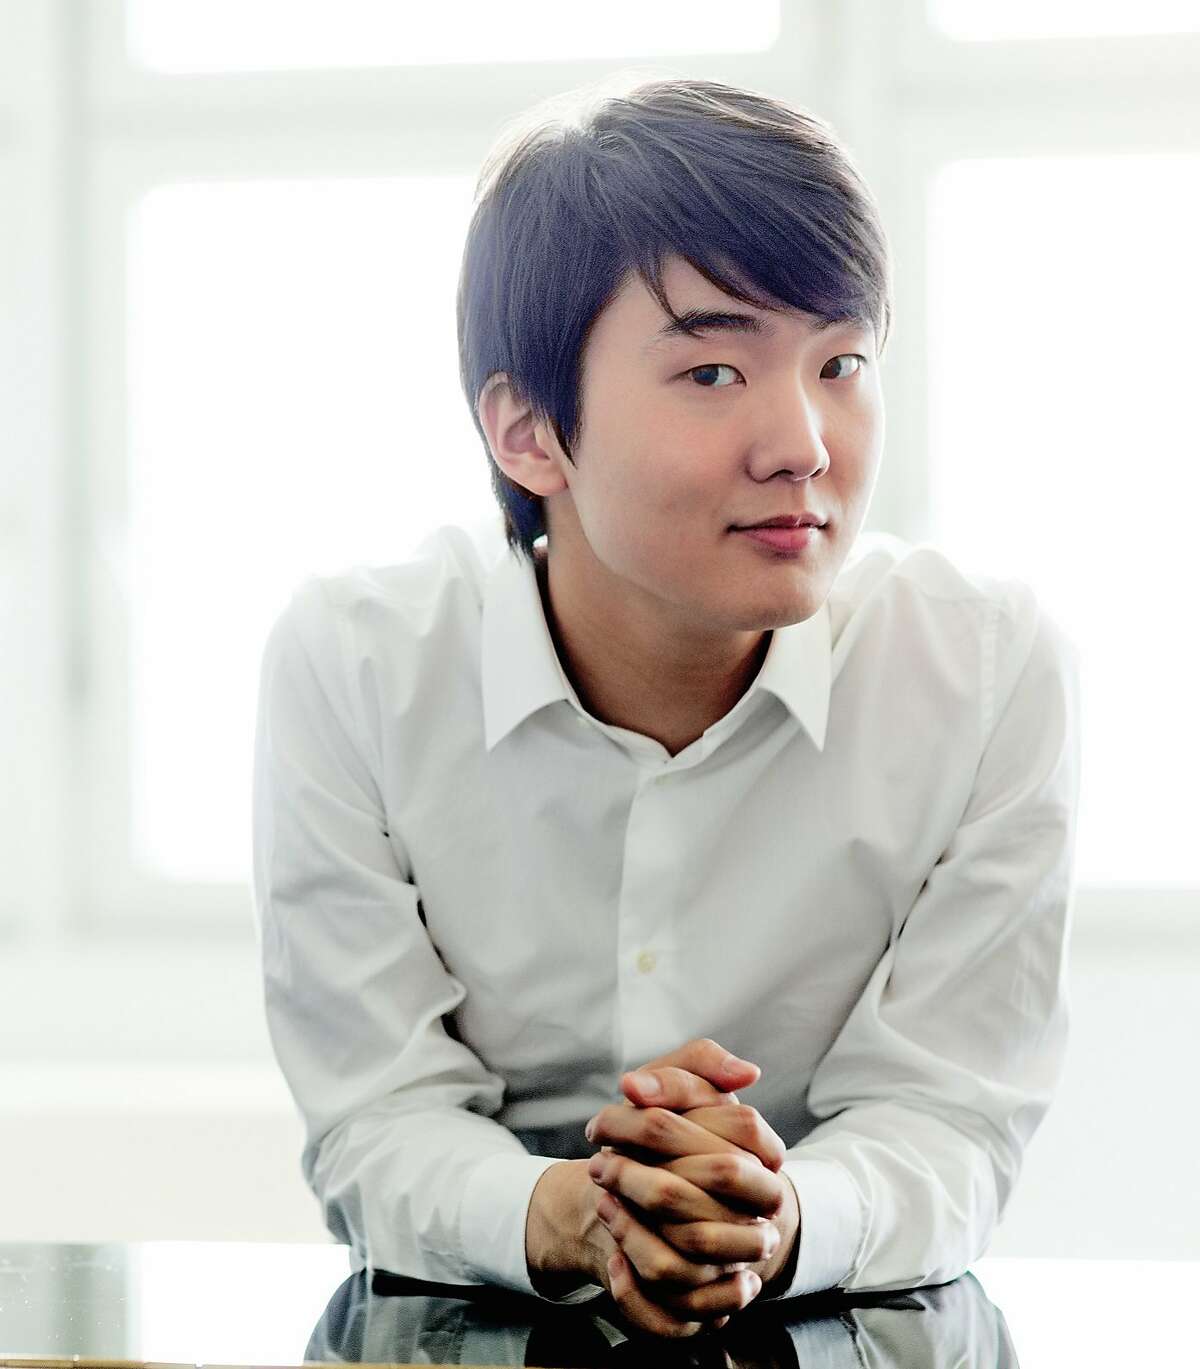 Pianist Seong-Jin Cho